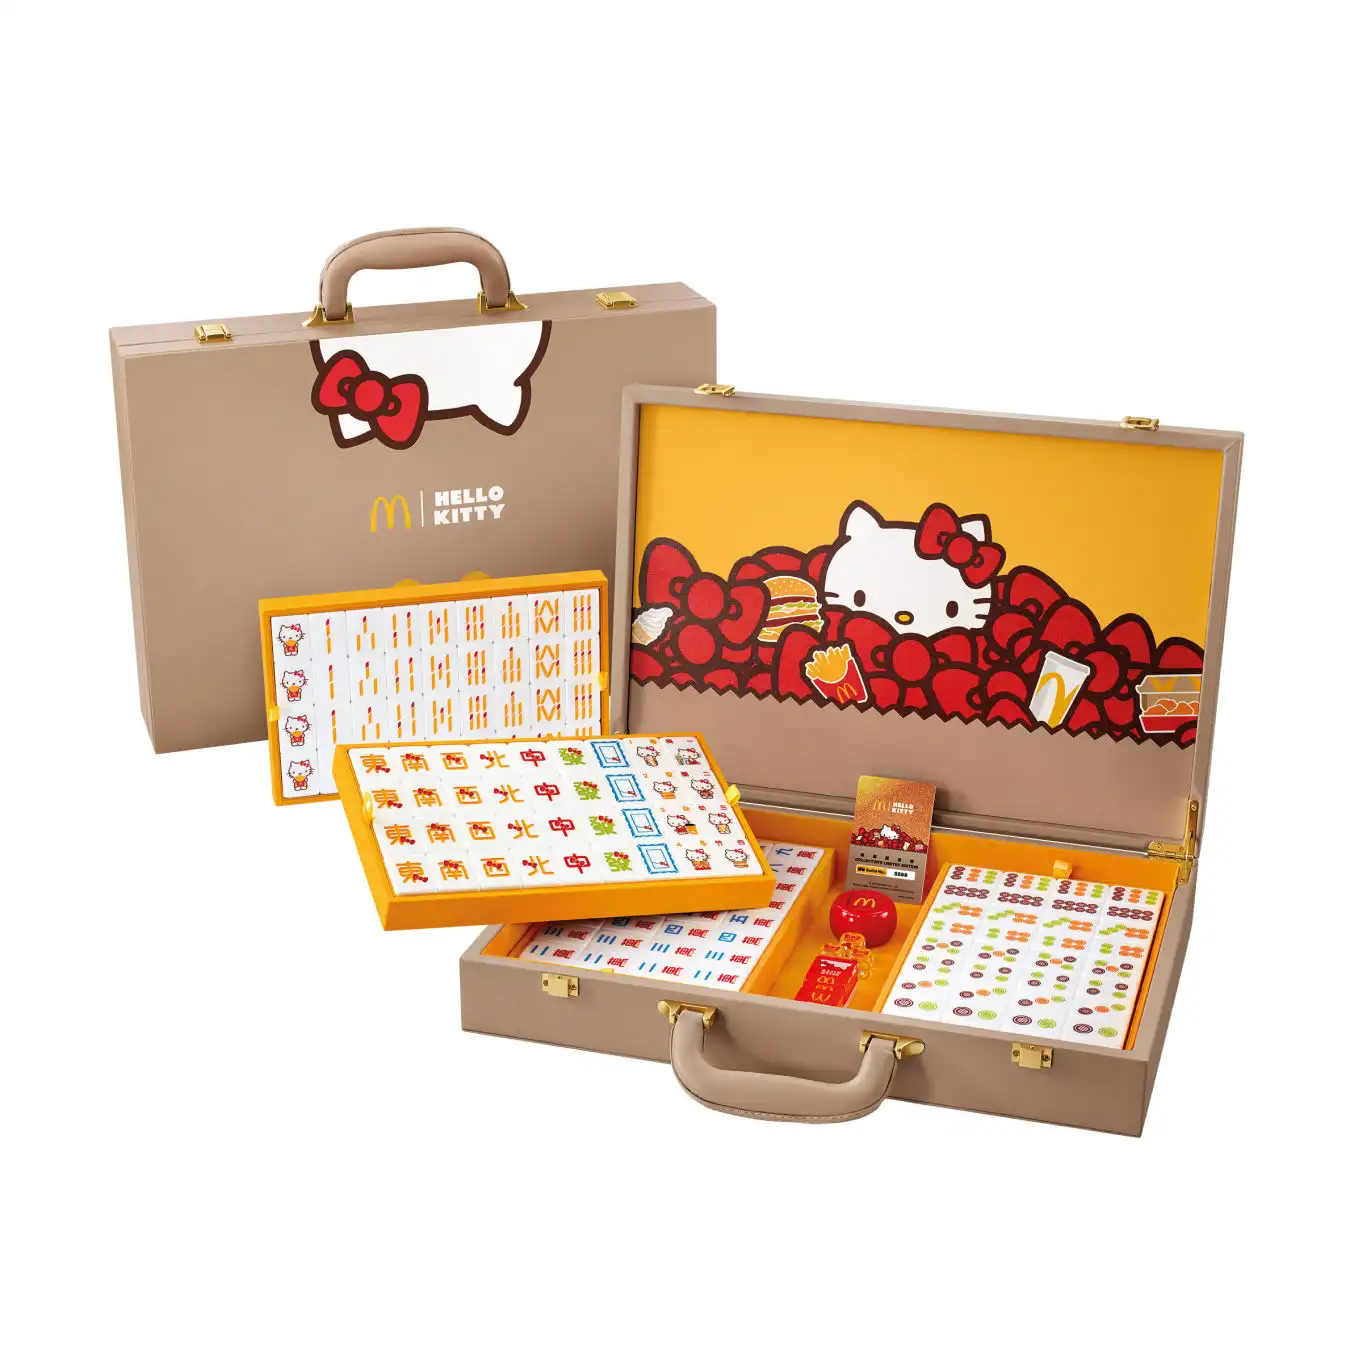 Play and win McDonald's Hello Kitty mahjong tile set